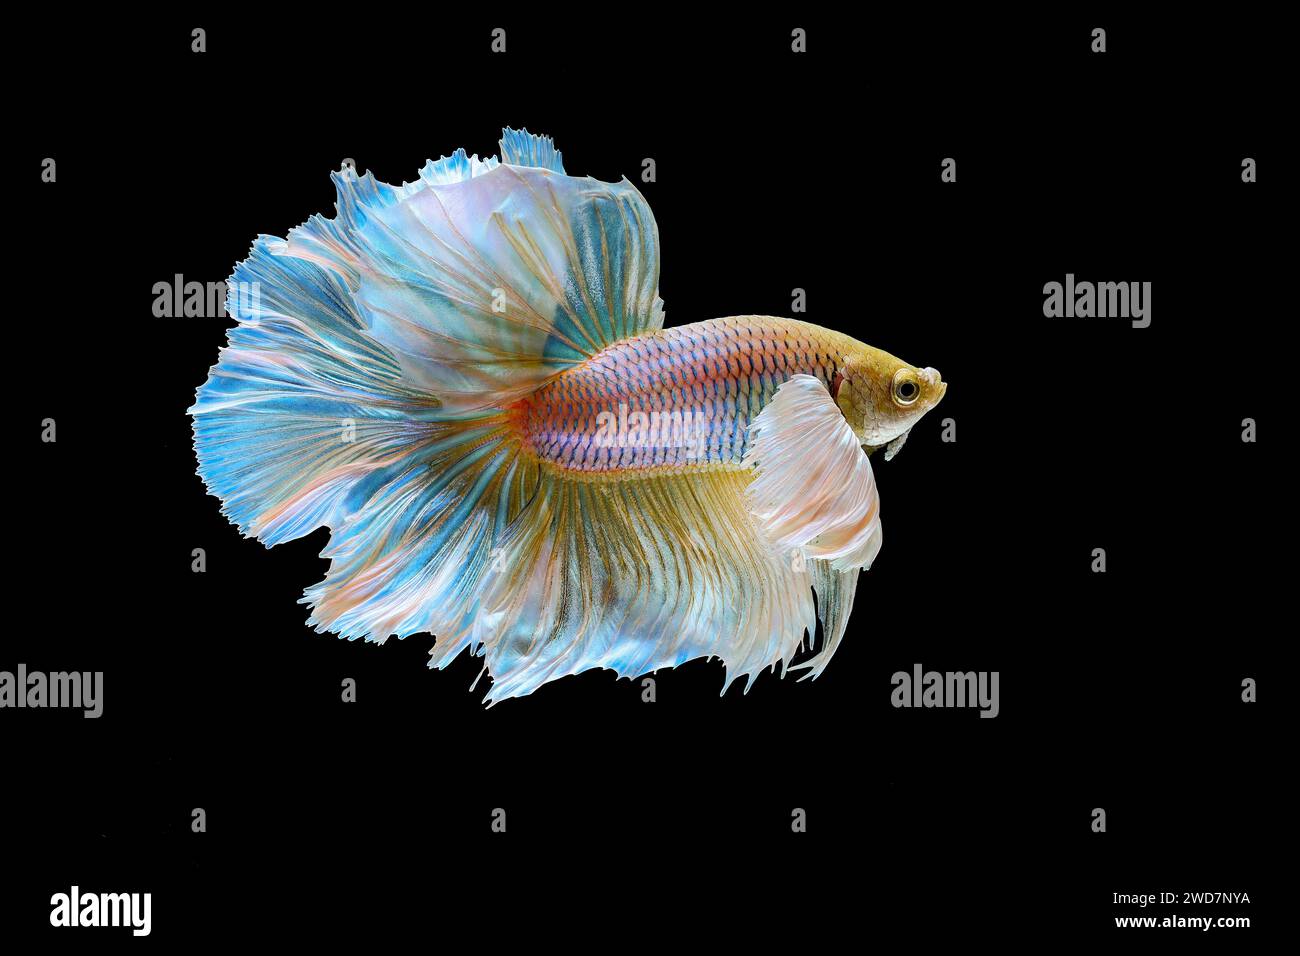 Yellow betta fish swimming in aquarium Stock Photo